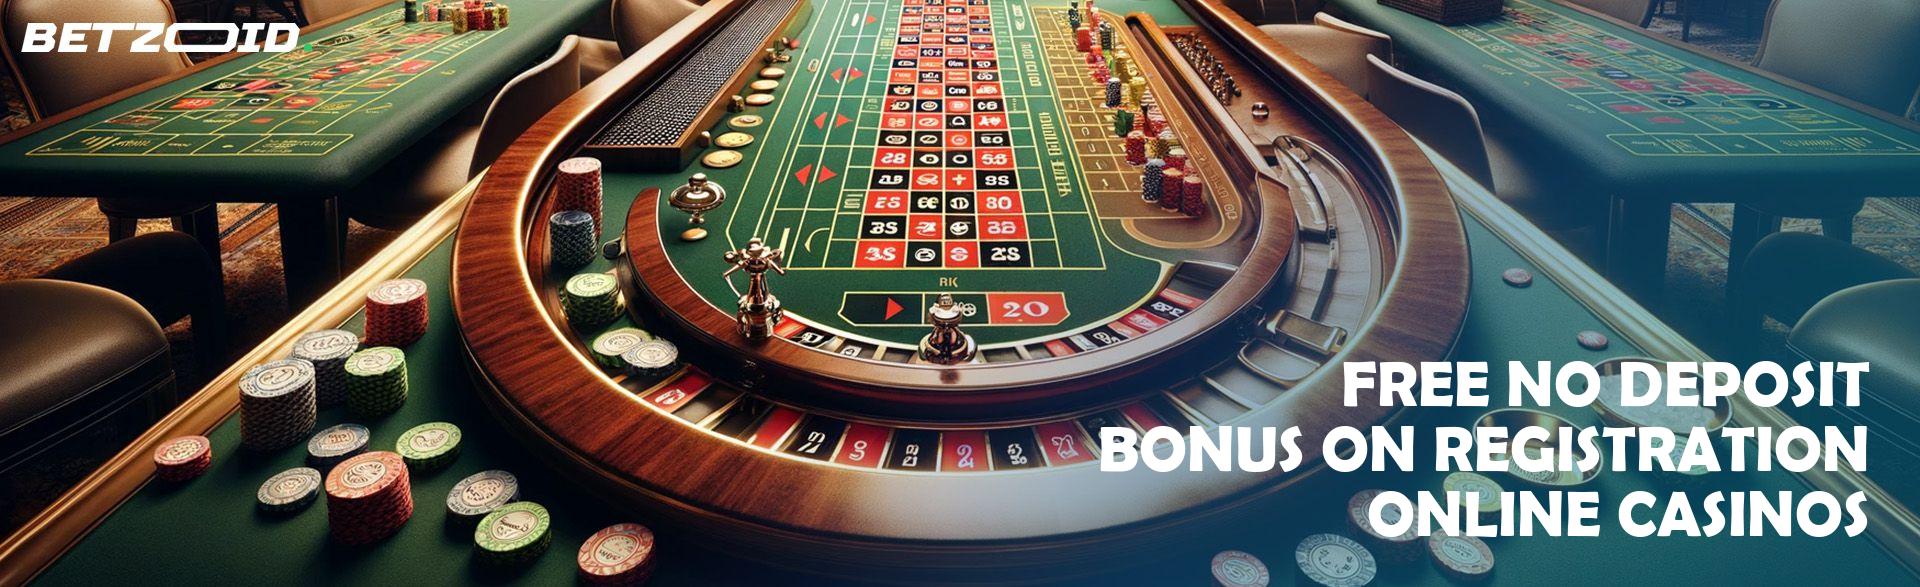 Free No Deposit Bonus On Registration Online Casinos.